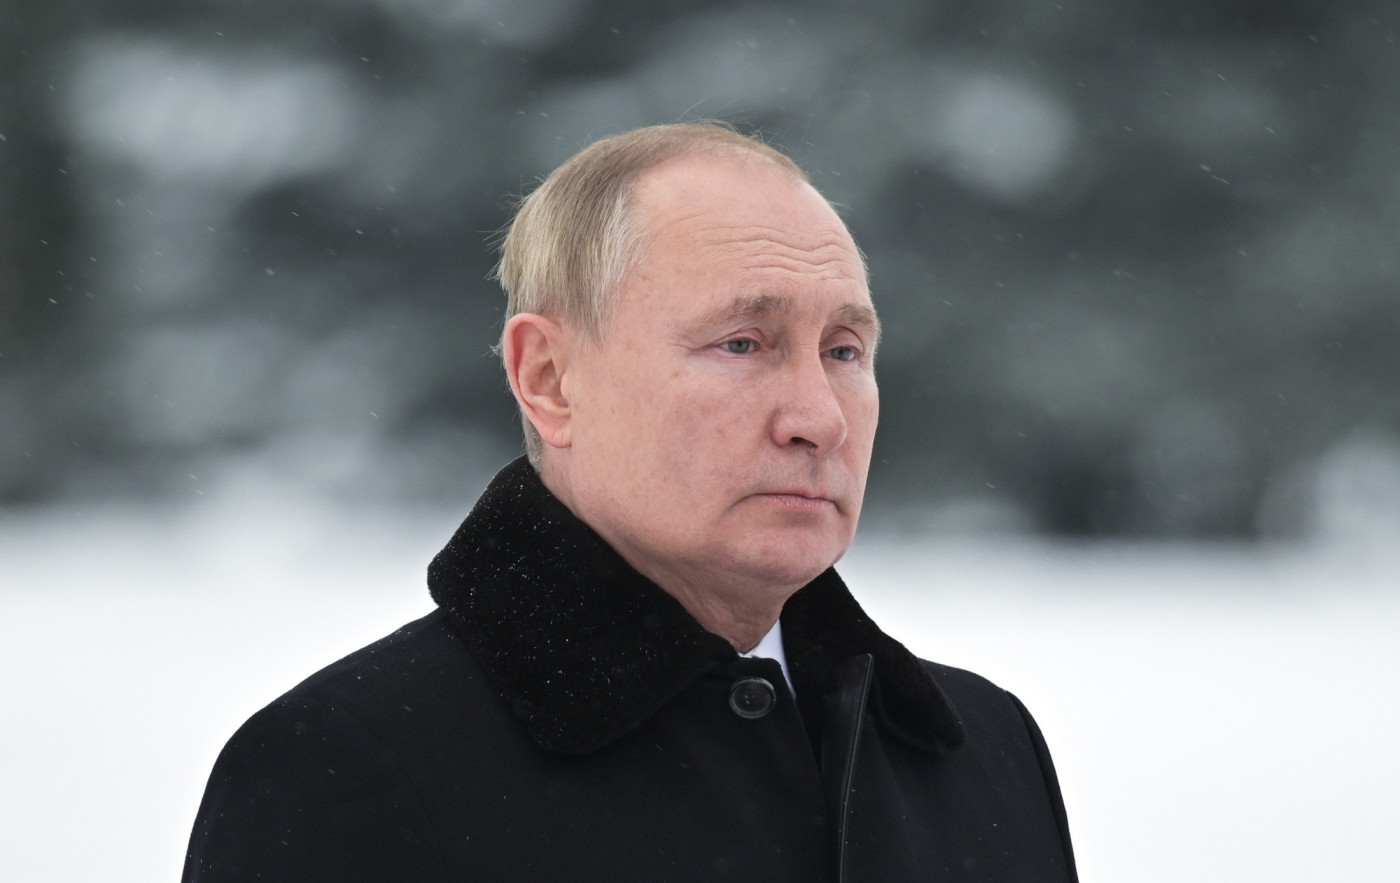 Vladimir Putin usa casaco preto e aparece de perfil